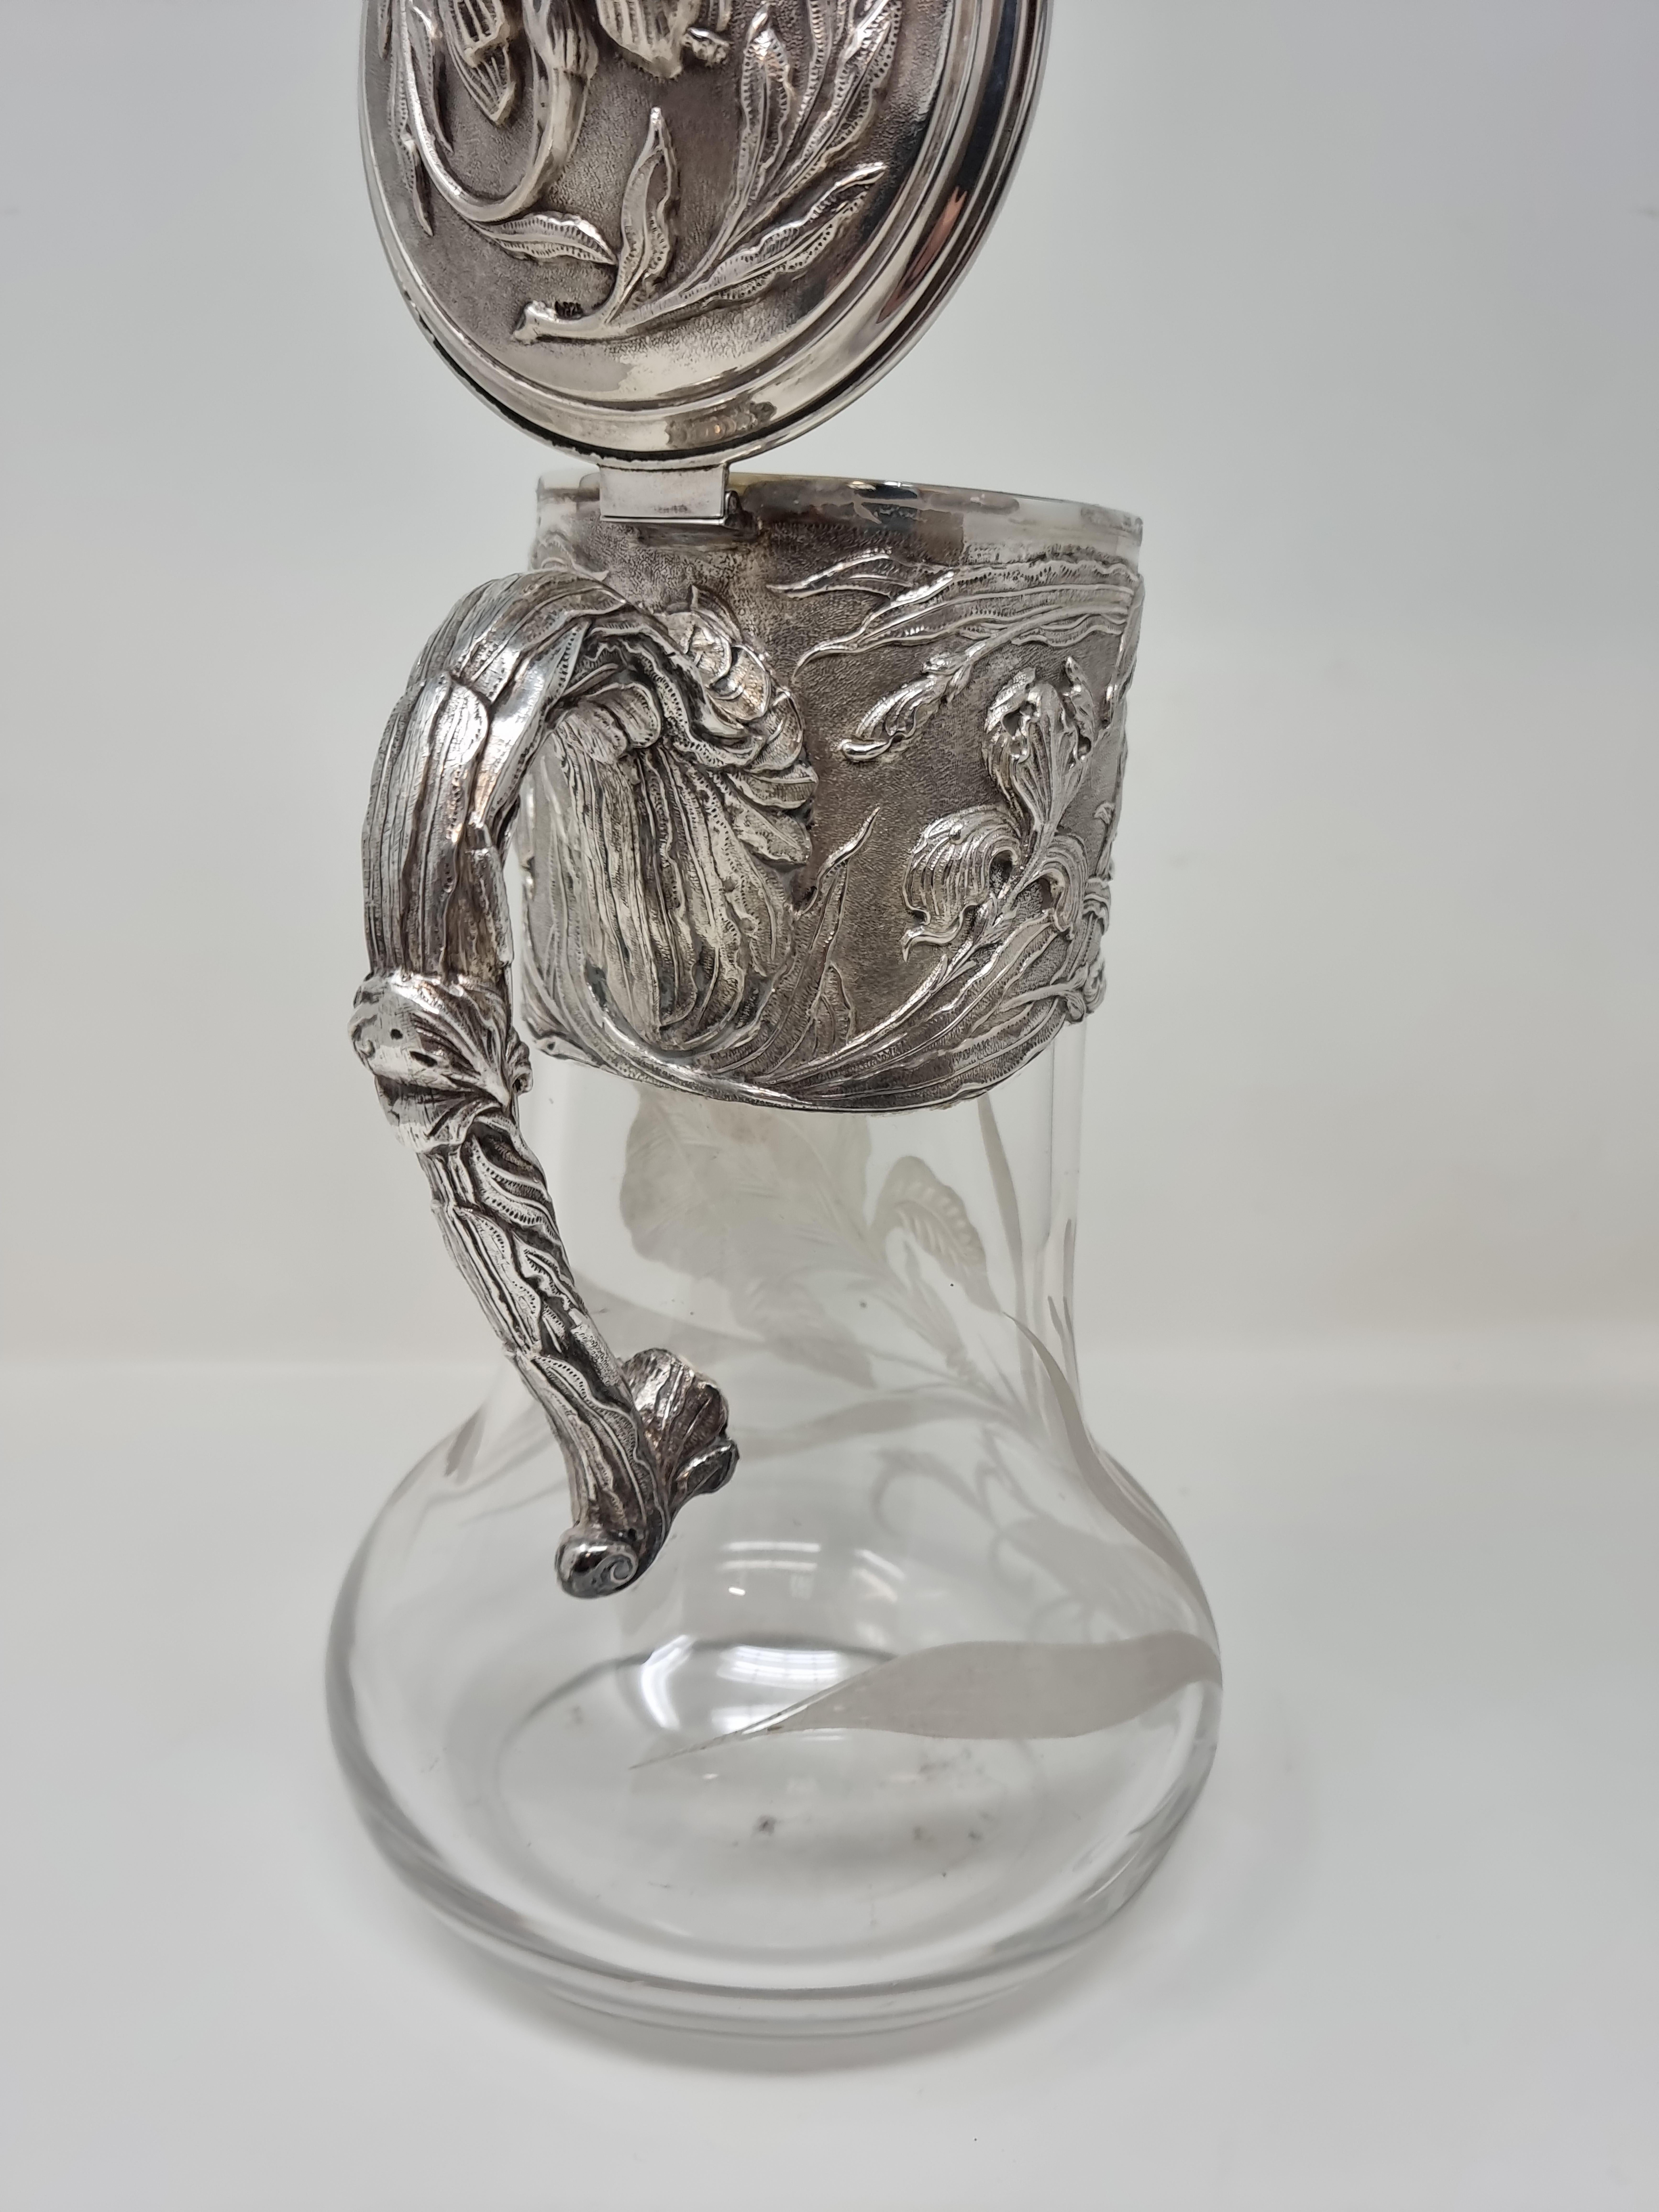 1909 Silver and Acid-Etched Crystal Claret Jug 'Wine Jug' For Sale 5